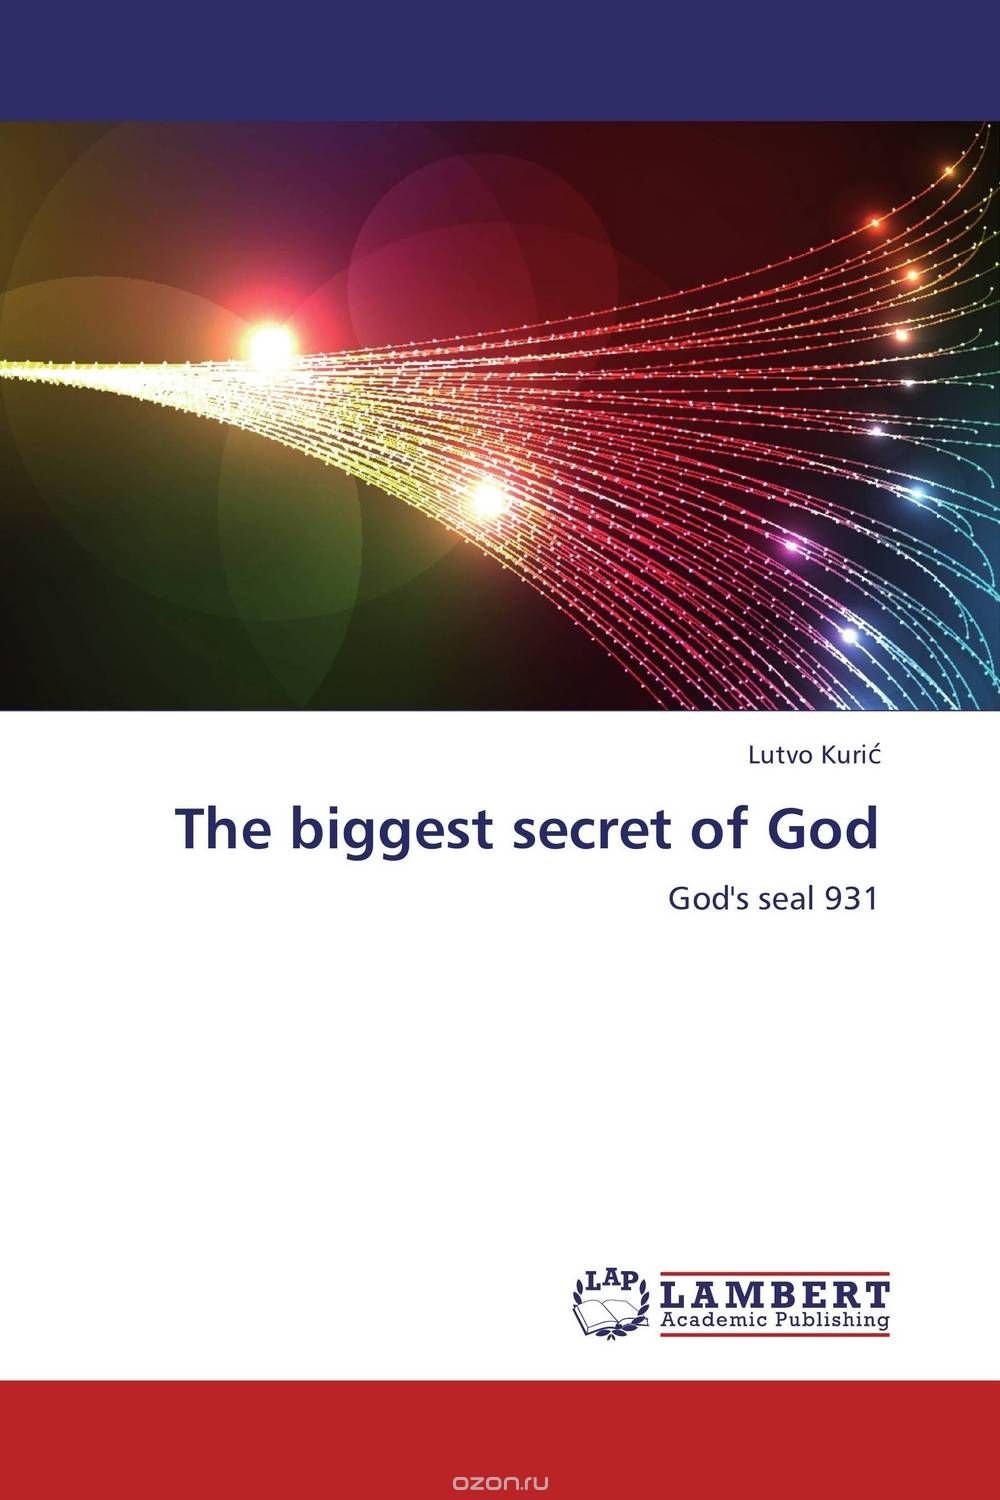 Скачать книгу "The biggest secret of God"